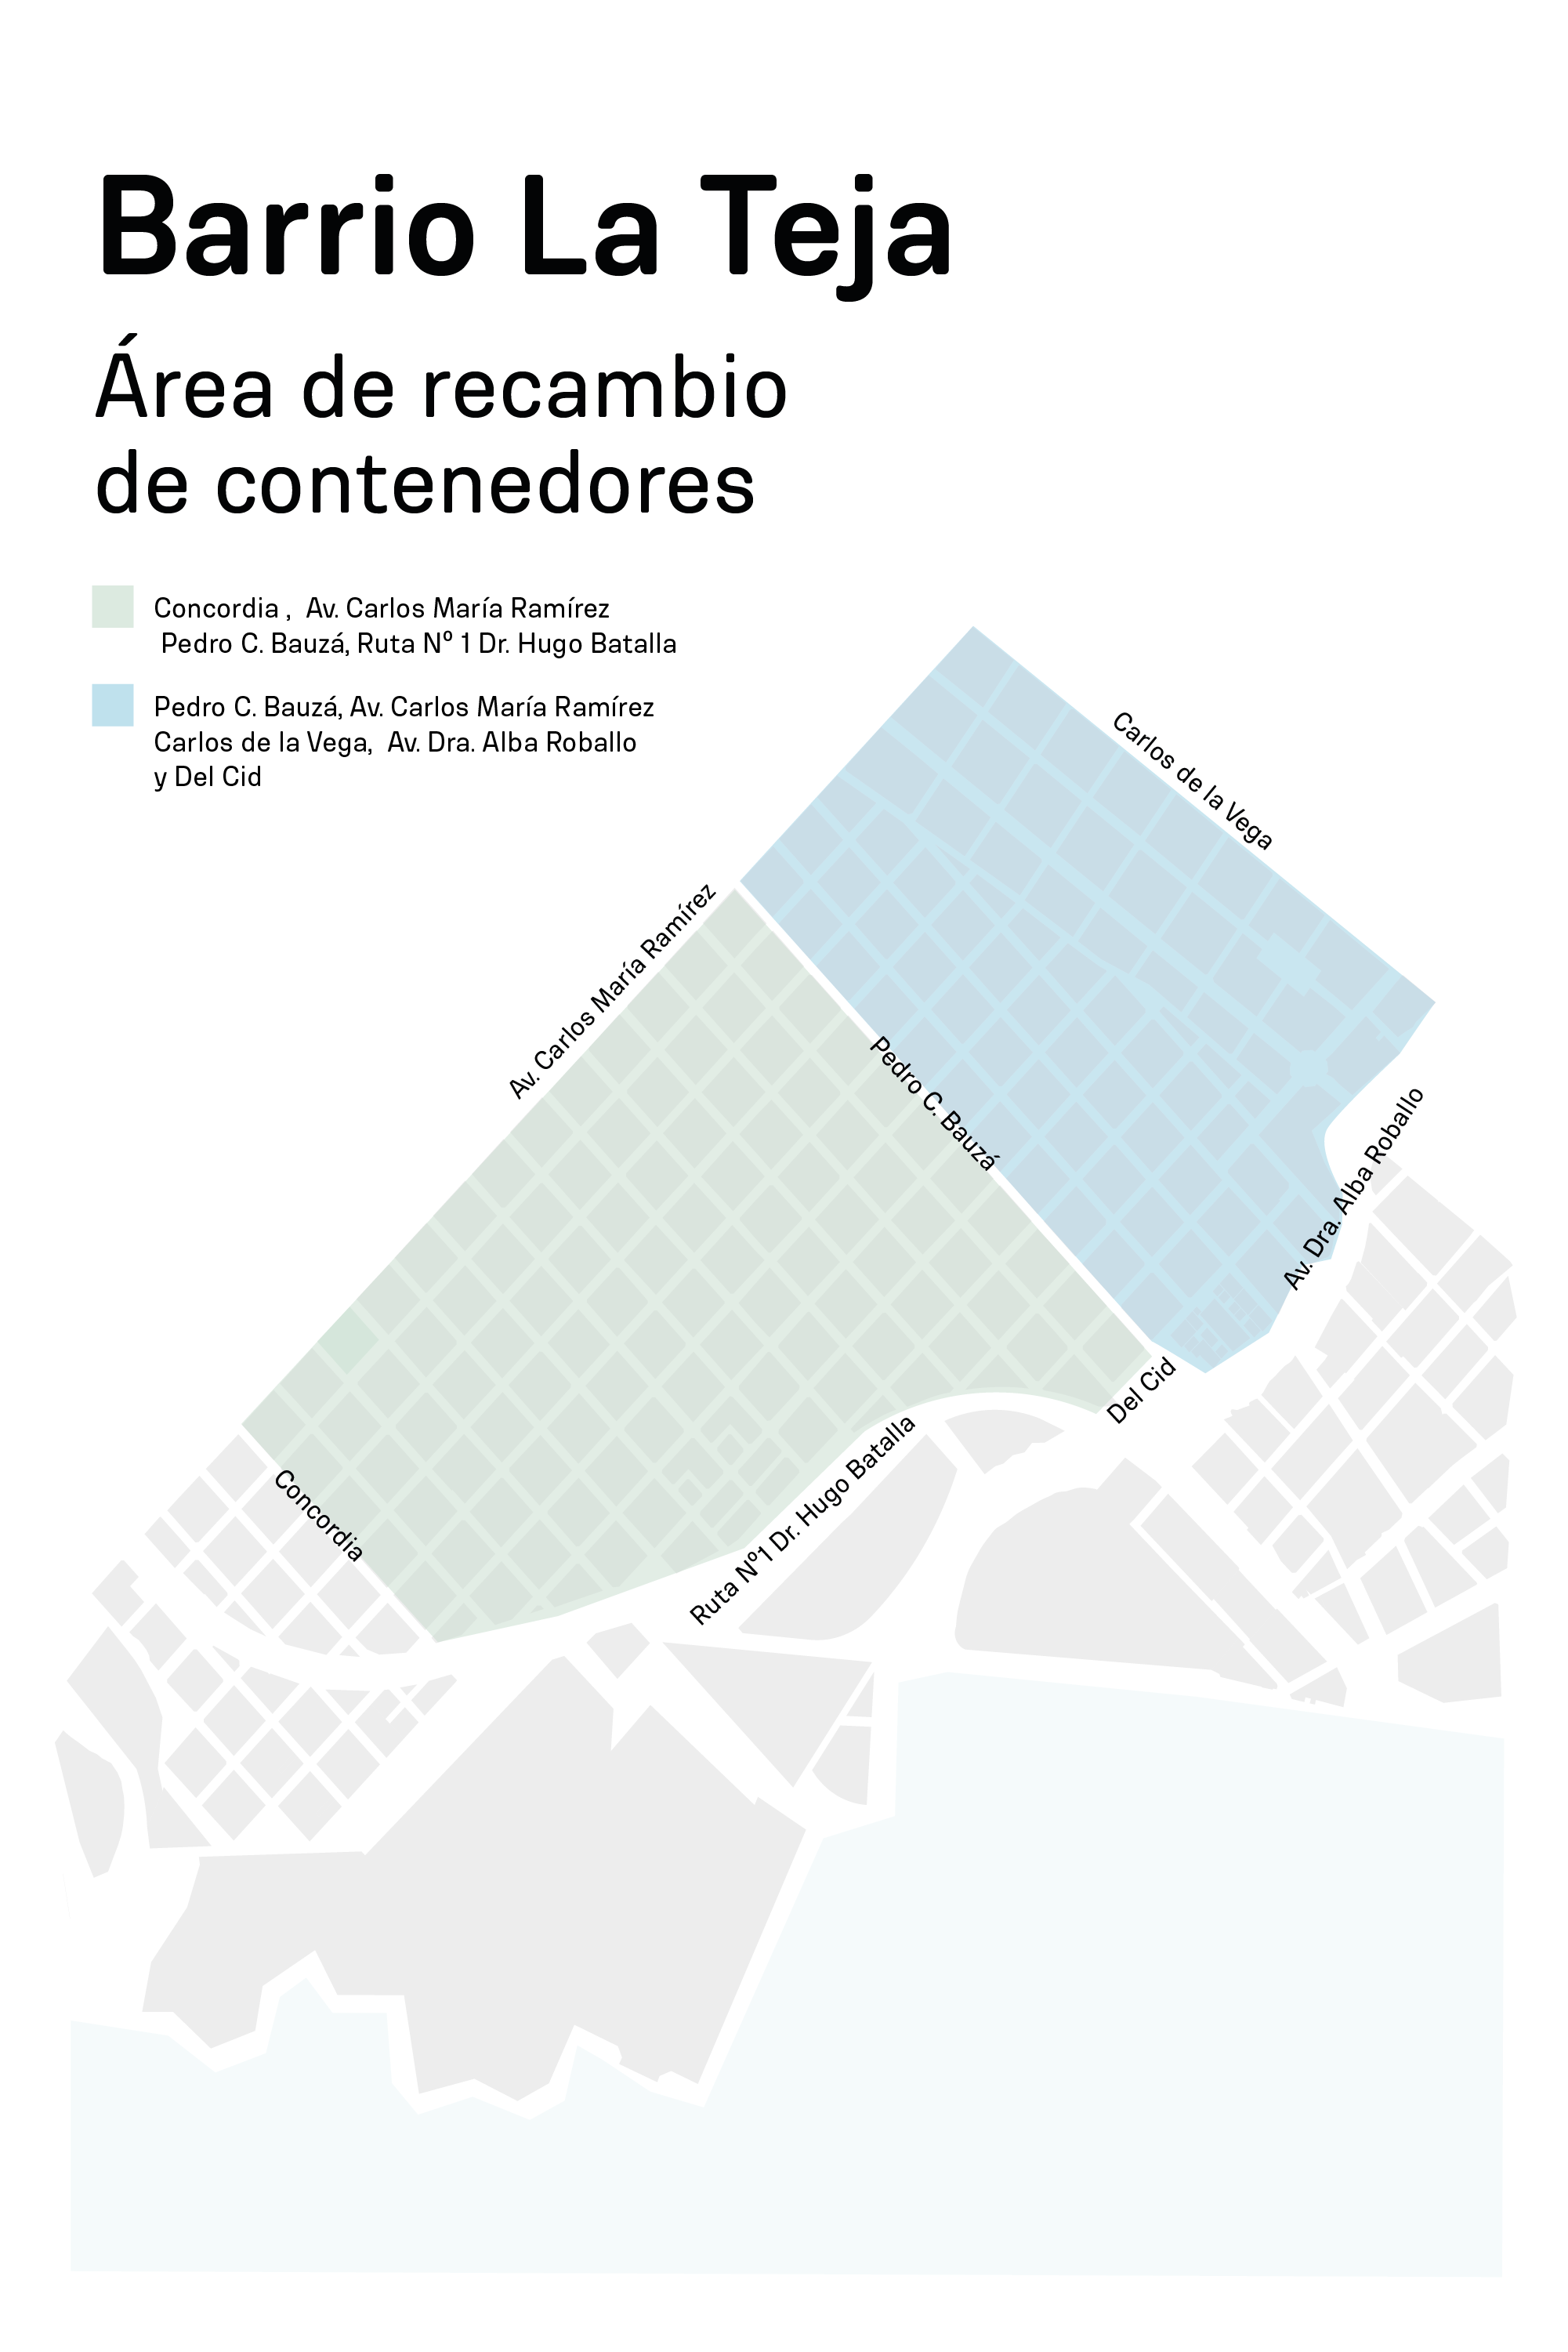 Mapa de contenedores en La Teja